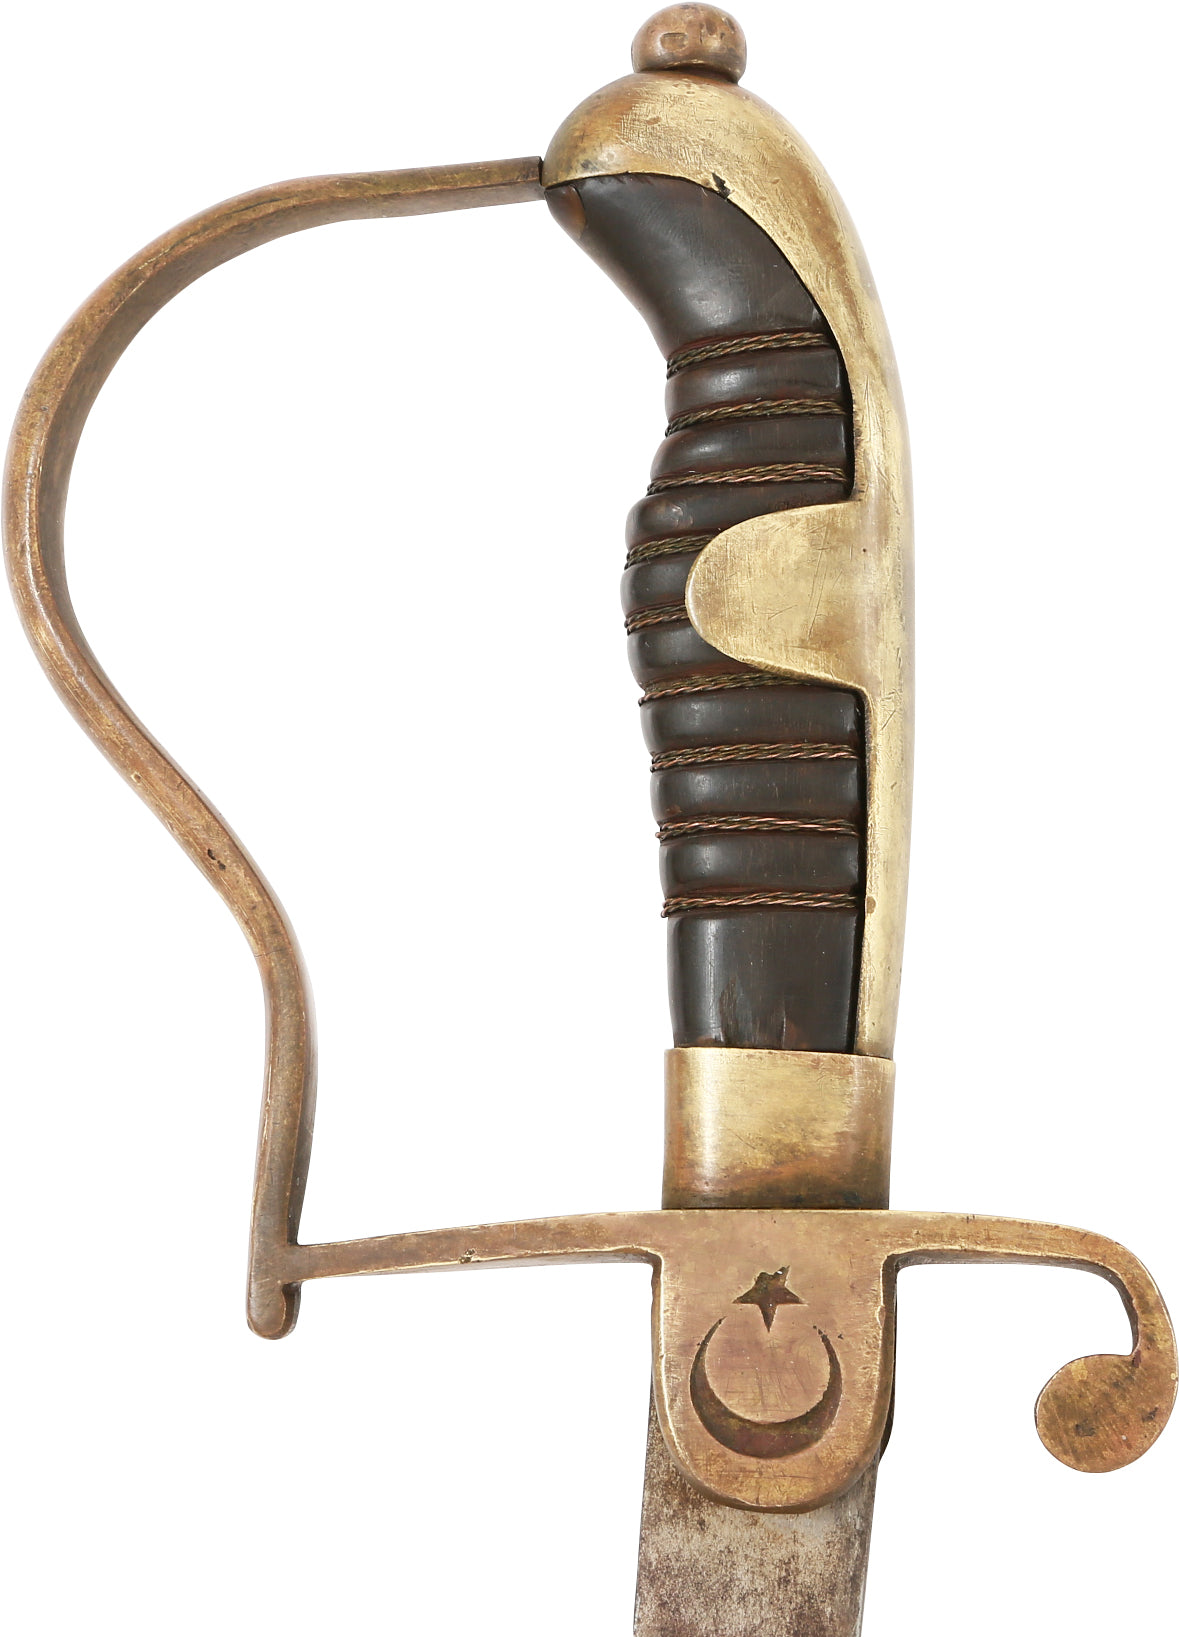 OTTOMAN TURKISH MILITARY SWORD C.1860-80 - Fagan Arms